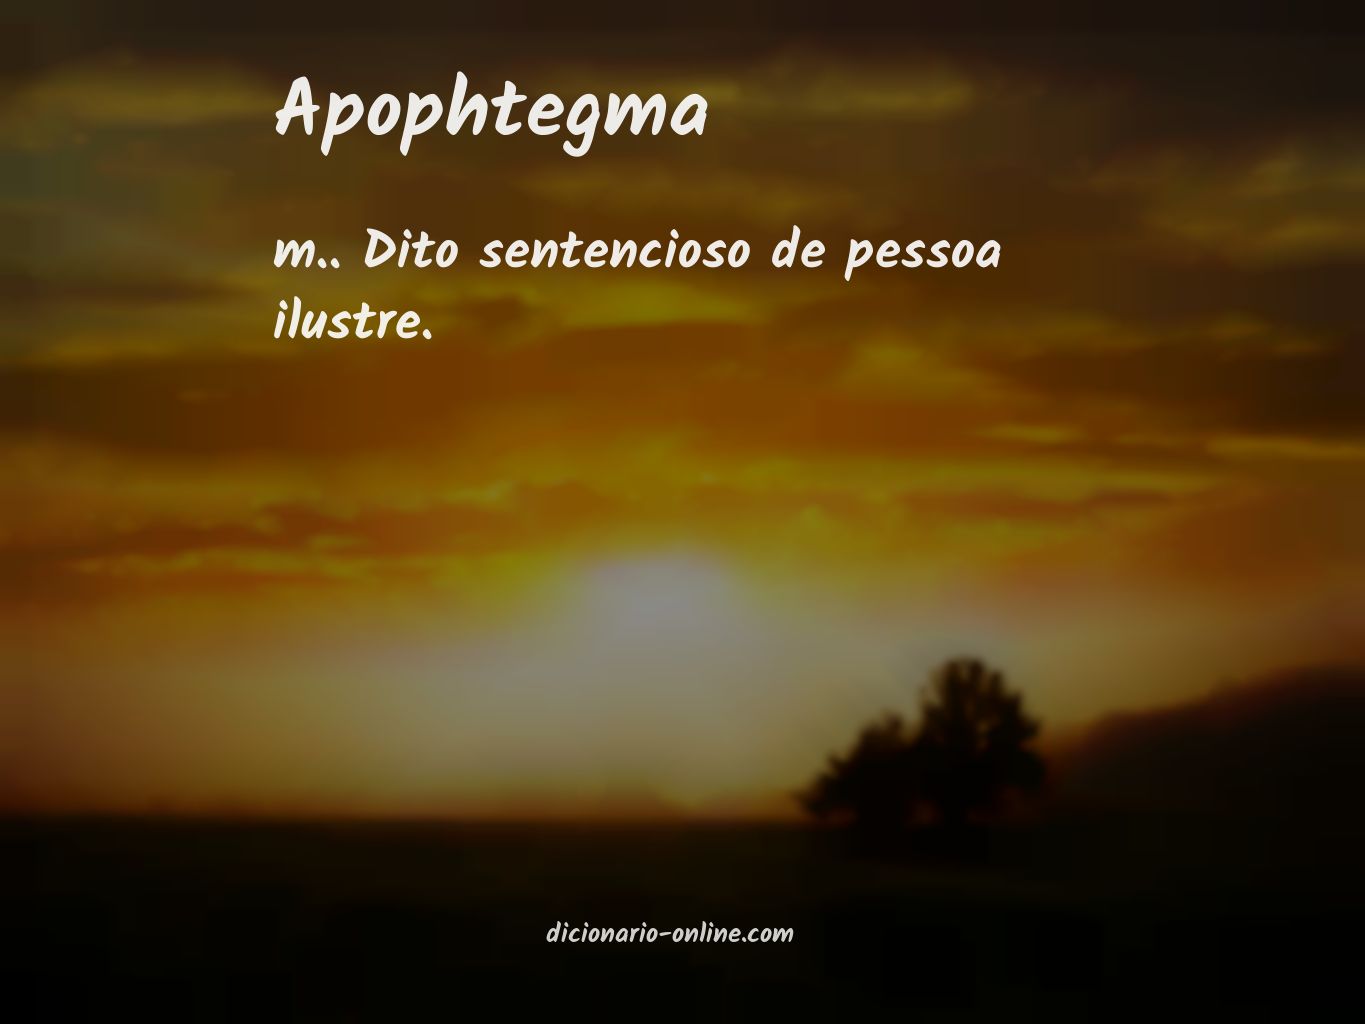 Significado de apophtegma